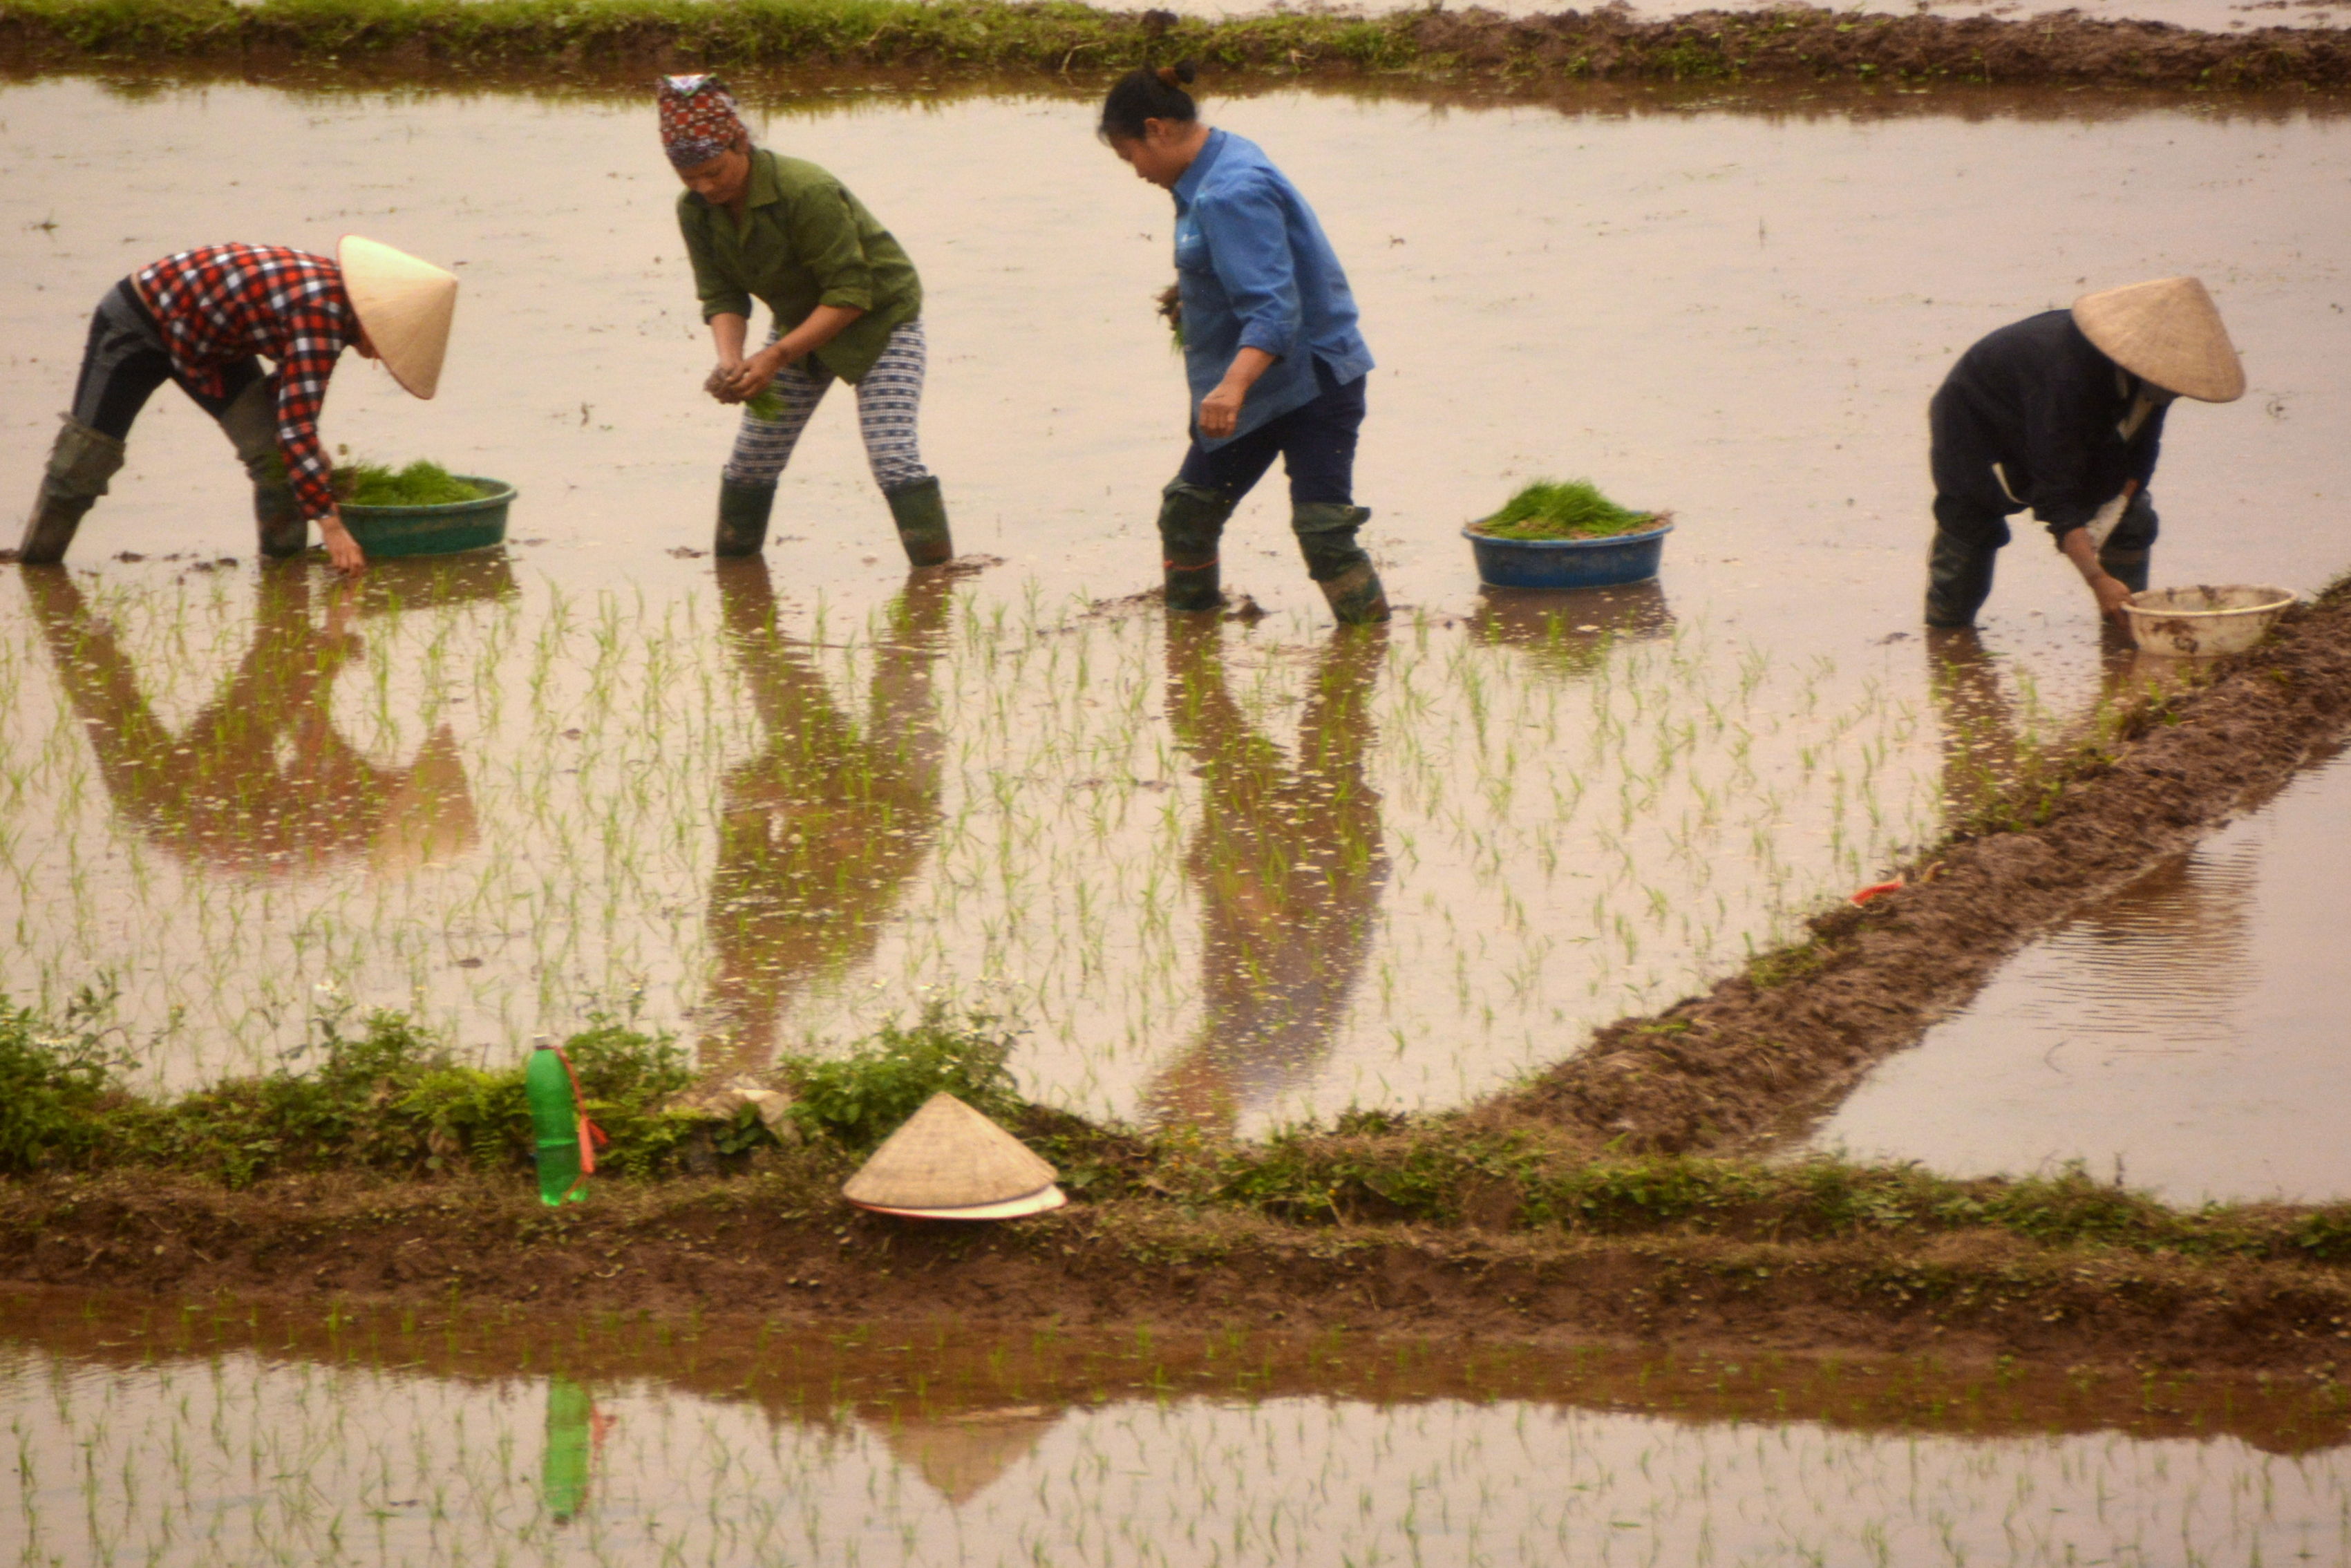 Plantation de riz